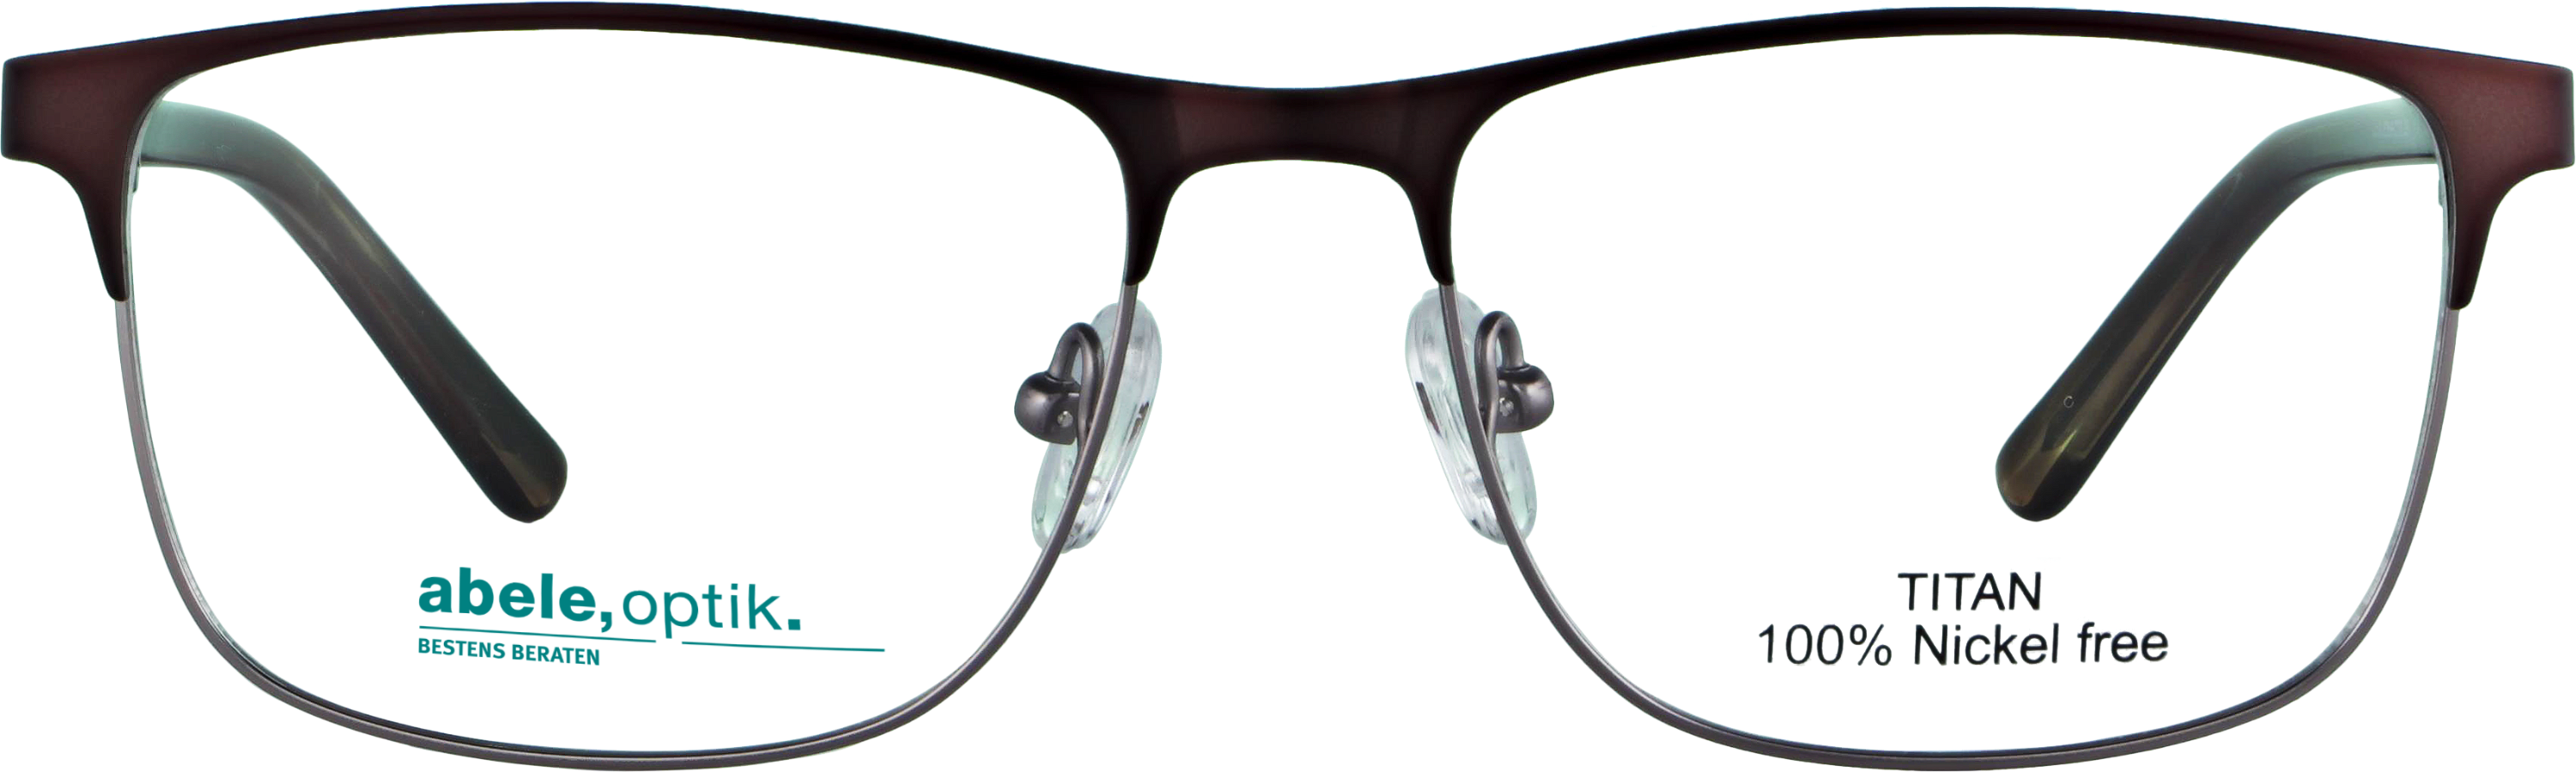 Das Bild zeigt die Korrektionsbrille 142311 von der Marke Abele Optik in braun matt.